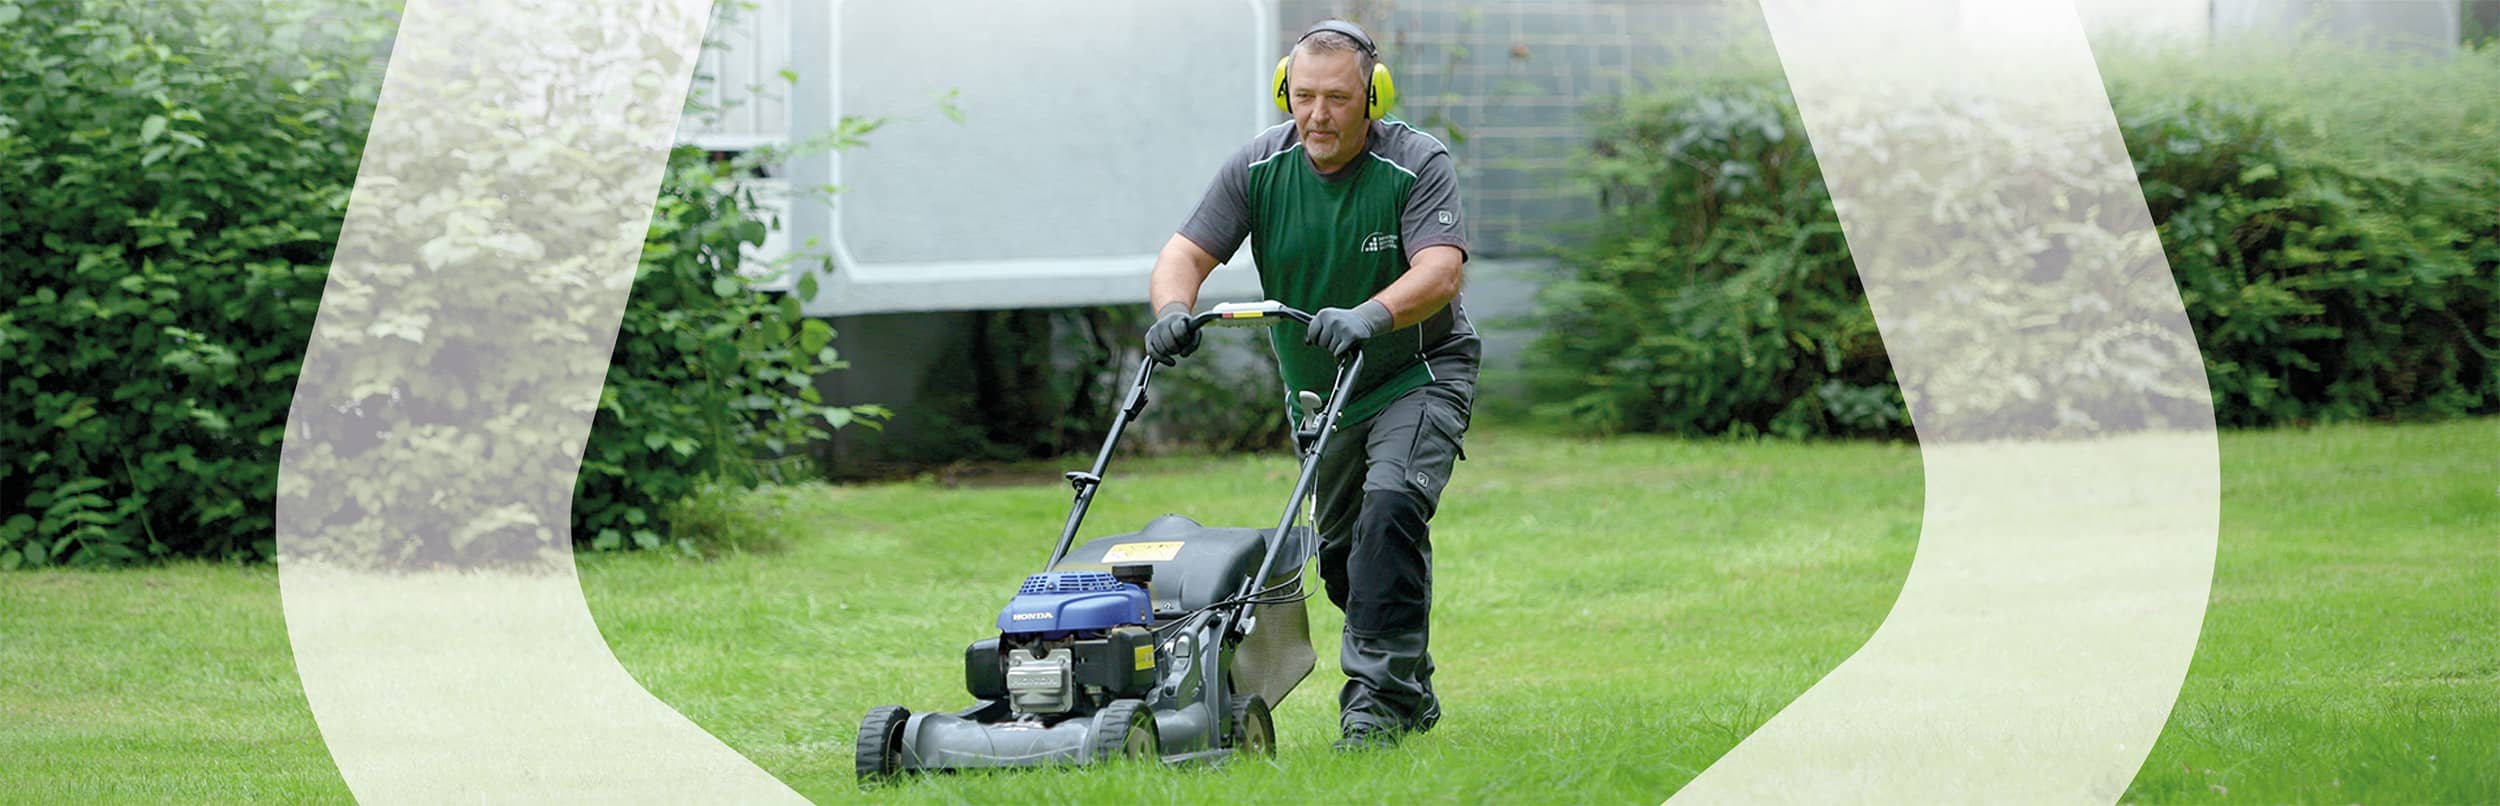 Mitarbeiter mit Rasenmäher bei Gartenpflege